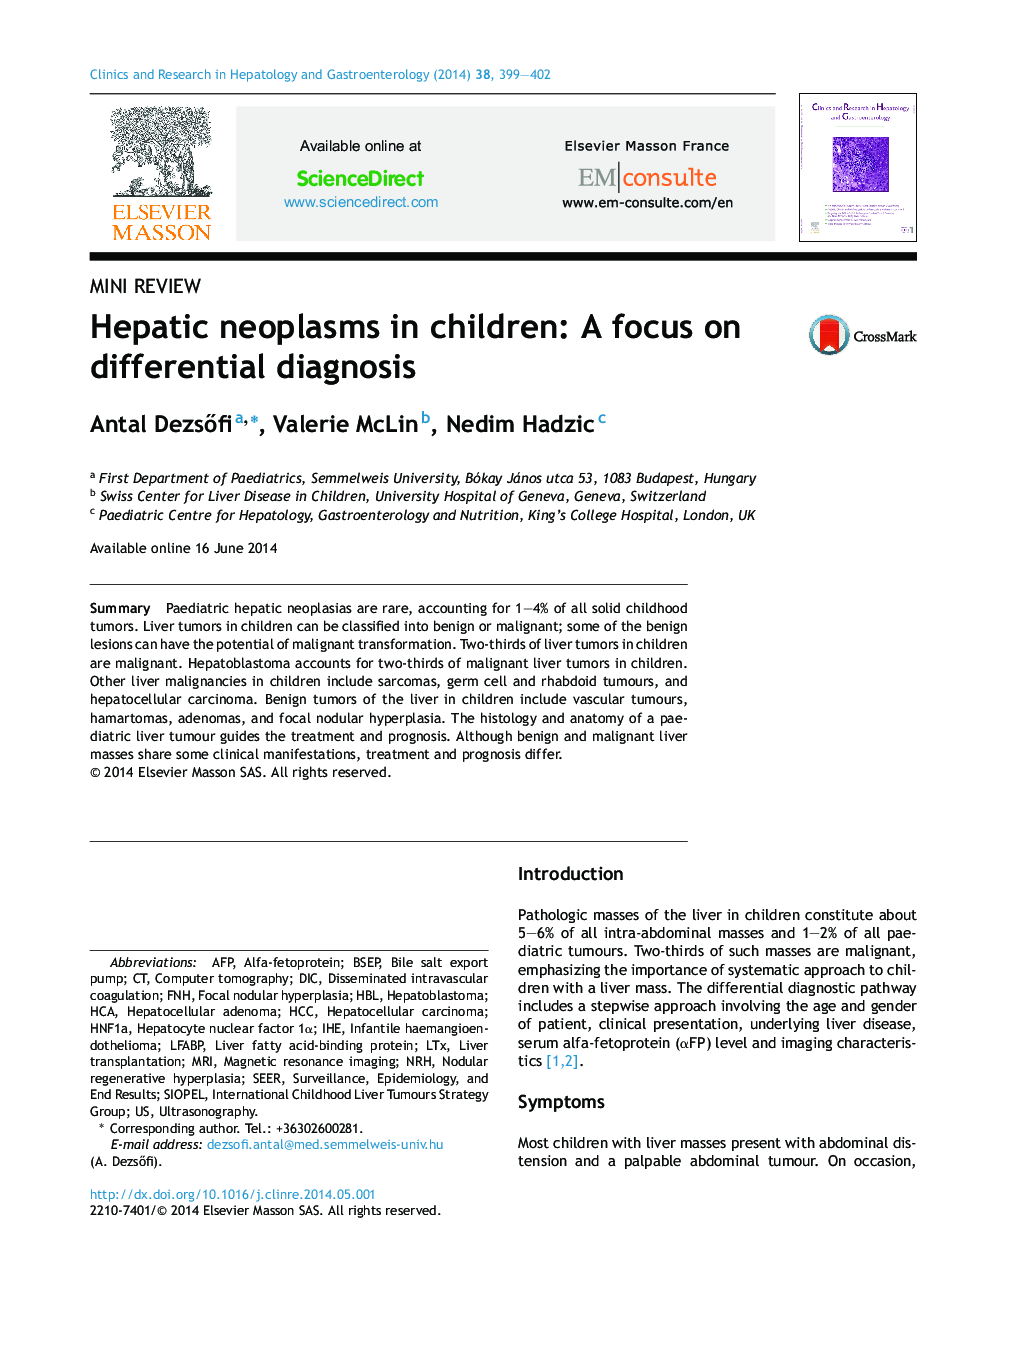 نئوپلاسم های کبدی در کودکان: تمرکز بر تشخیص افتراقی 